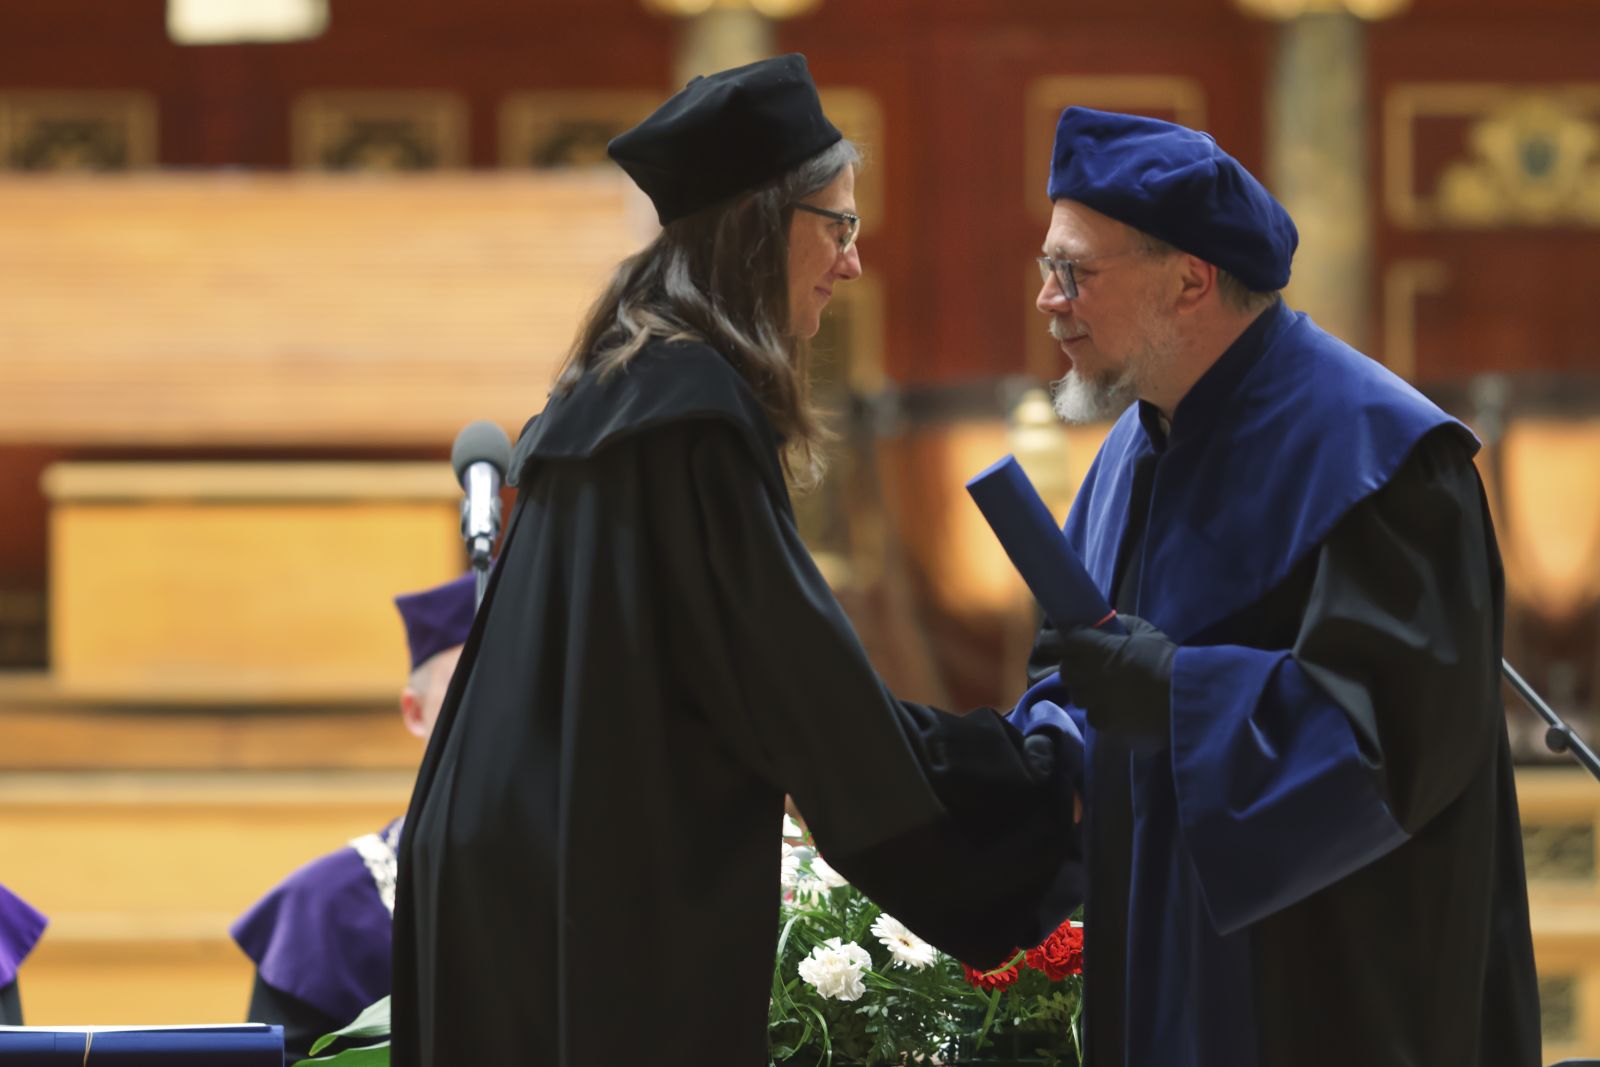 Dwie osoby w togach, starszy mężczyzna w okularach wręcza młodej kobiecie dyplom, ściskając jej dłoń.